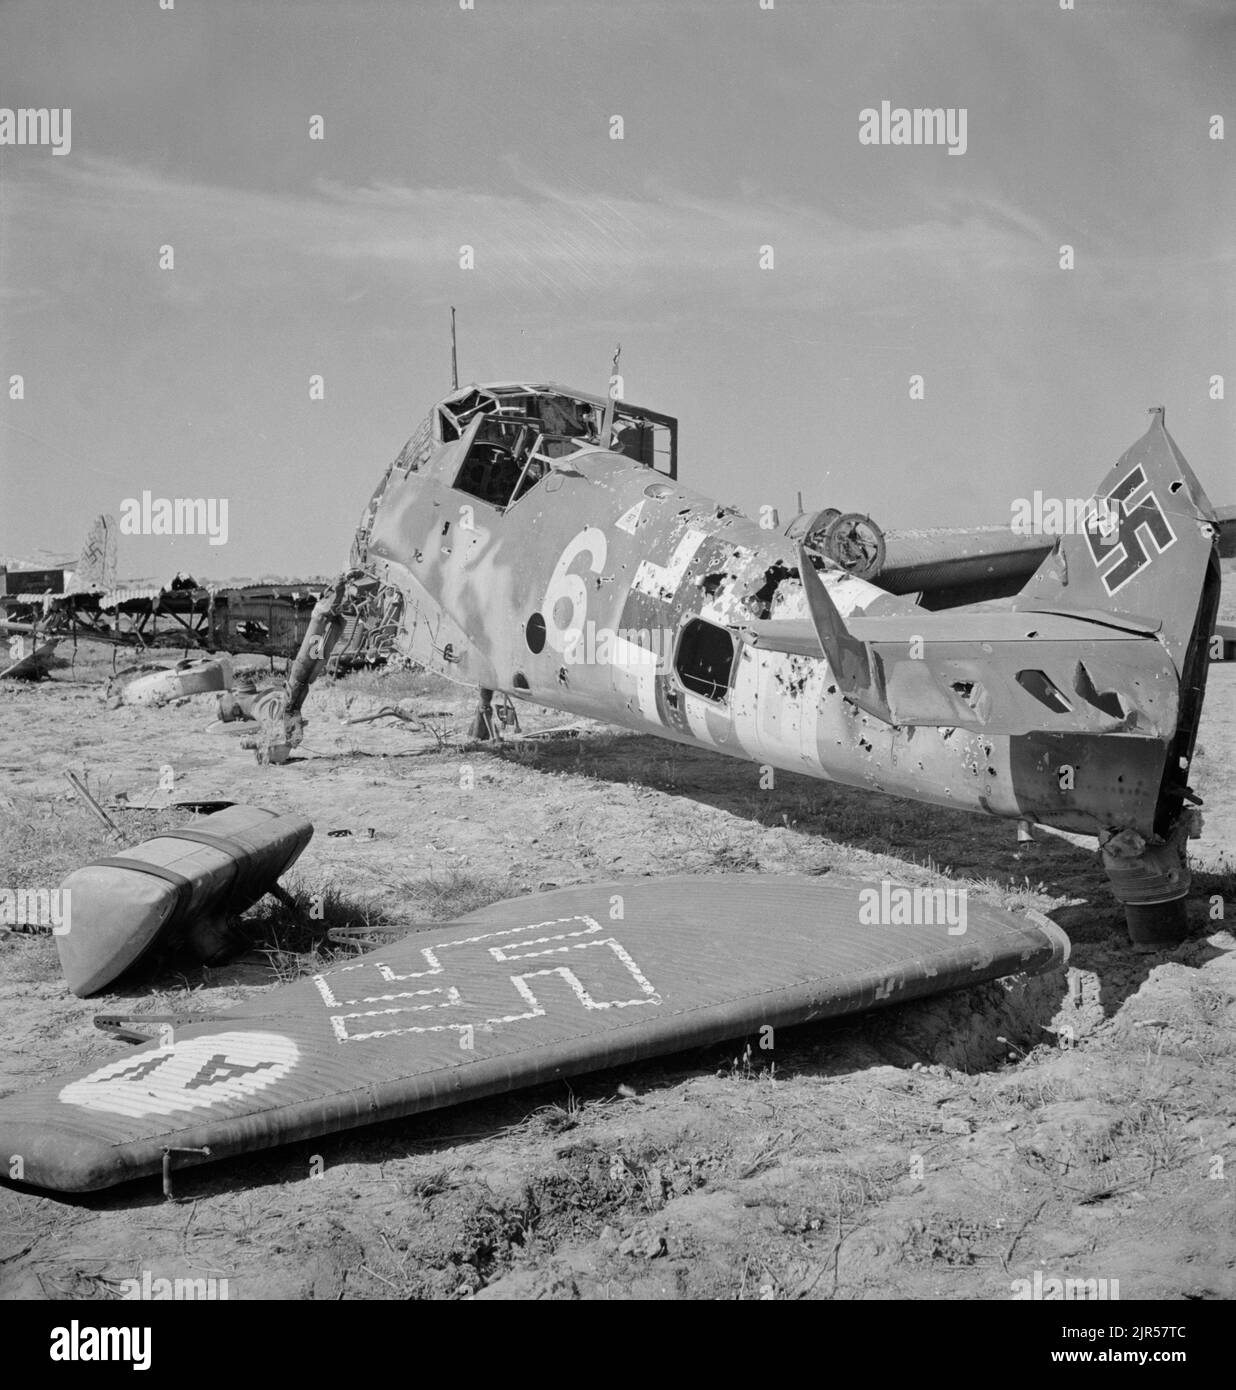 Une photo d'époque vers mai 1943 montrant un avion de chasse allemand Messerschmitt BF109 détruit à El Aouiana Tunisie après la défaite des forces de l'axe en Afrique du Nord Banque D'Images